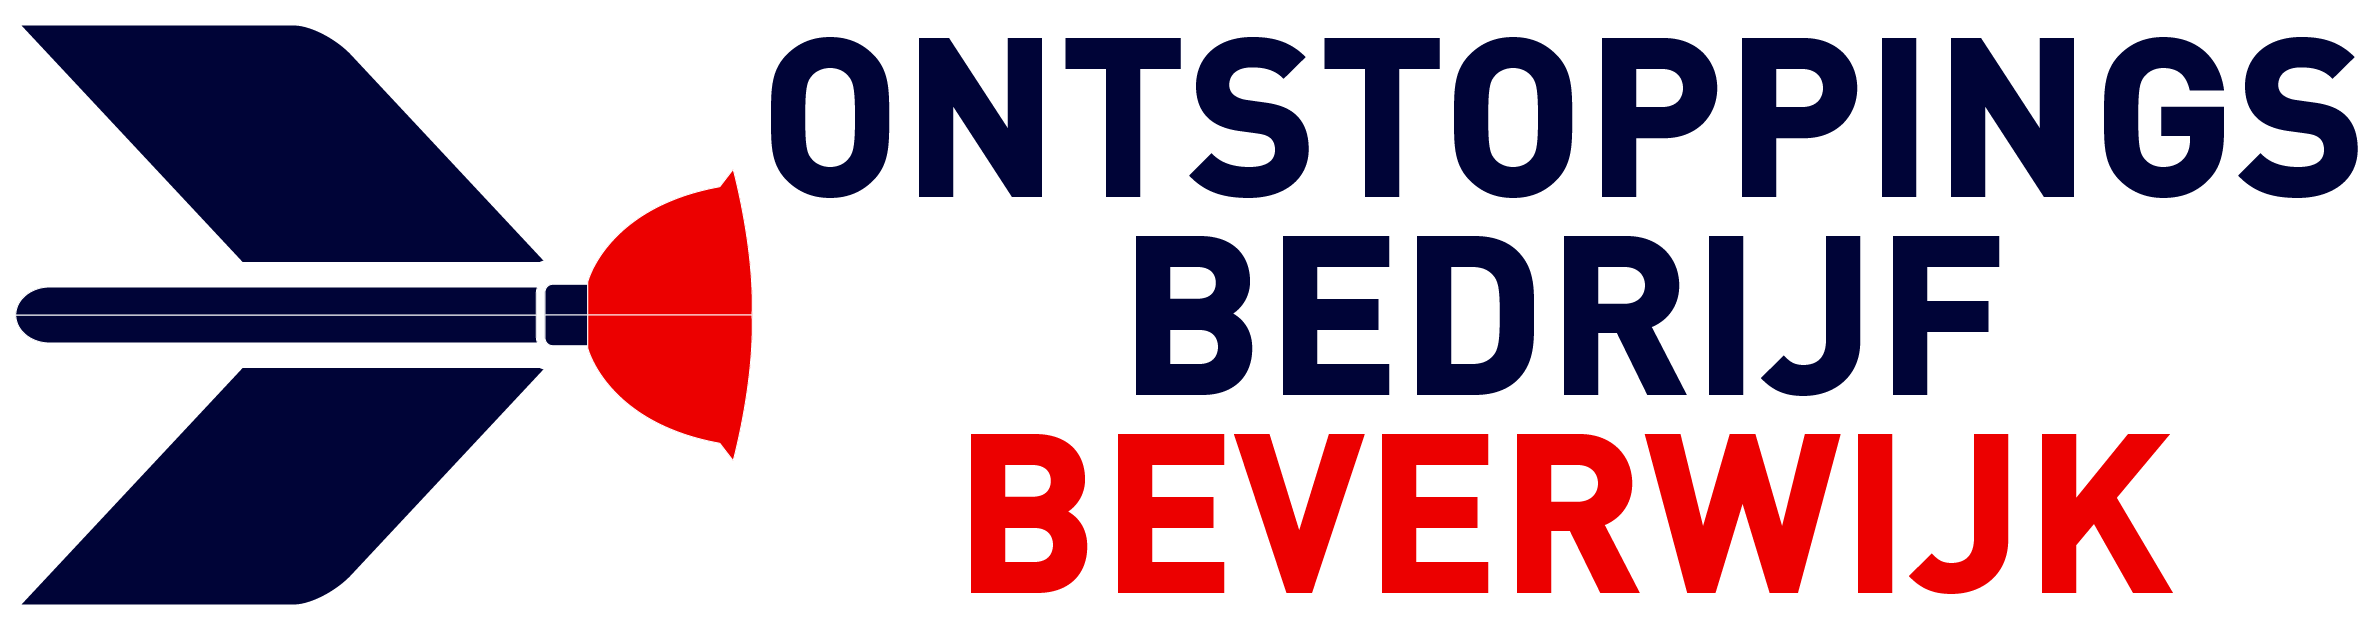 Ontstoppingsbedrijf Beverwijk logo